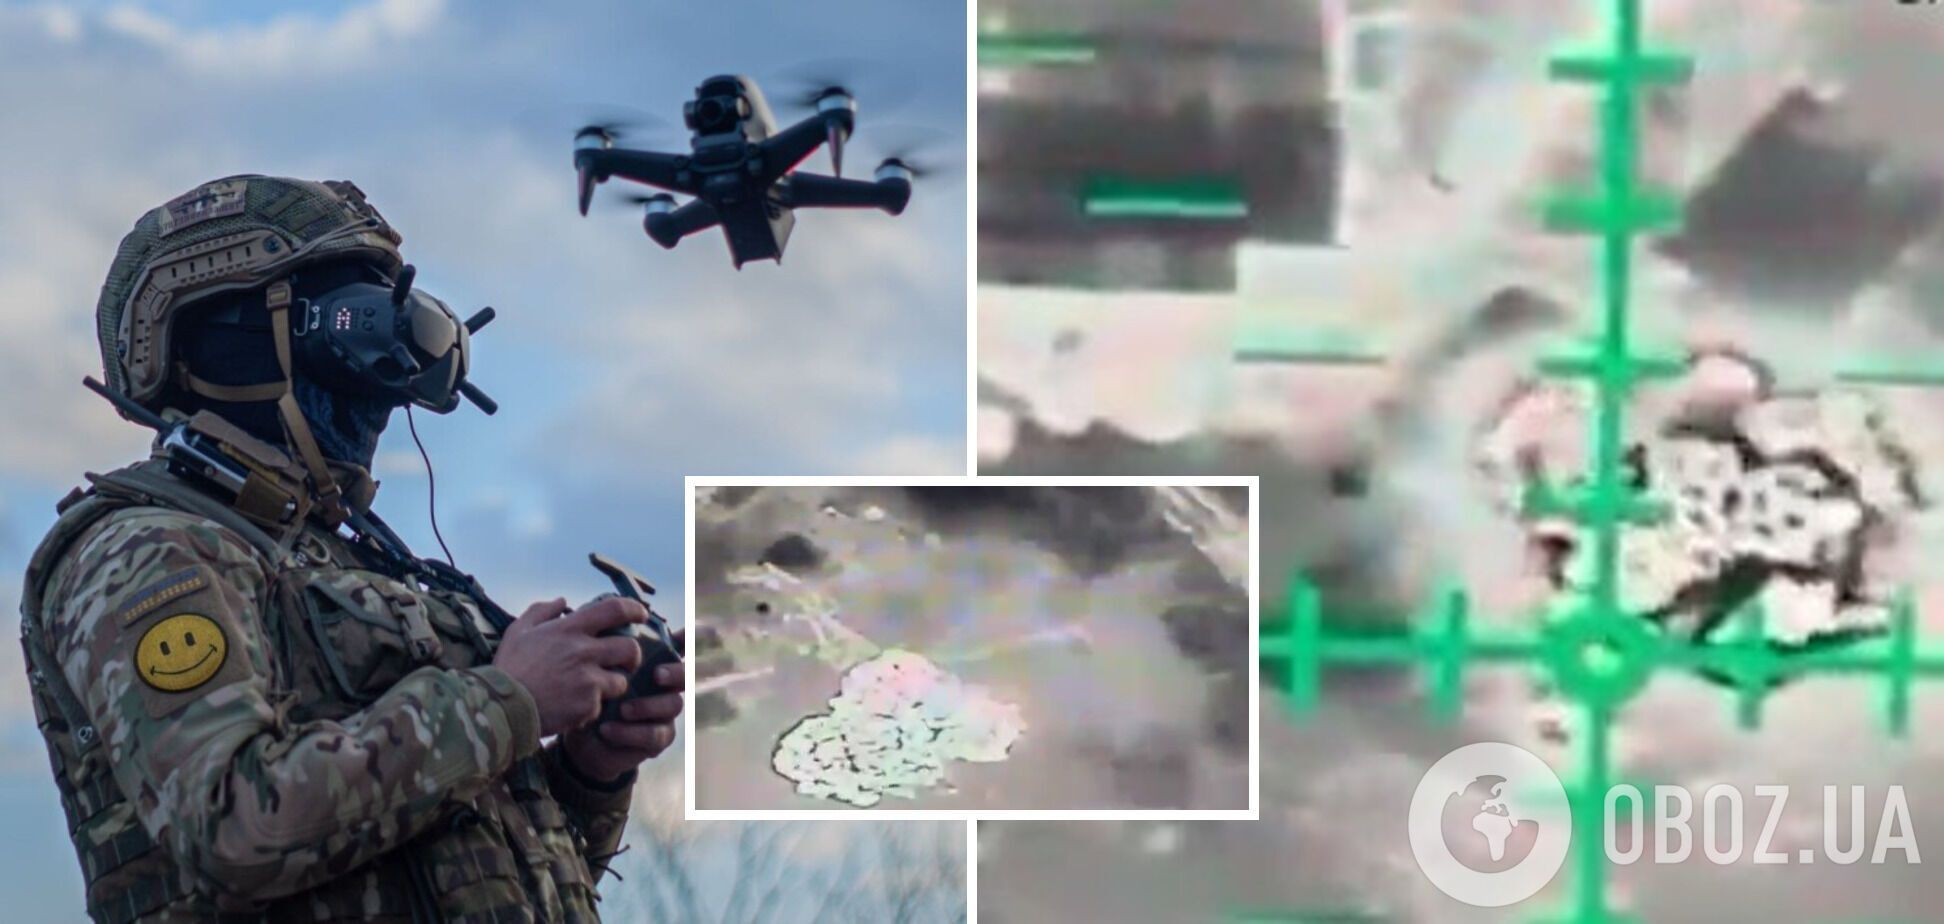 Отработали 'птички' Mavic: ВСУ эффектно уничтожили позиции оккупантов, откуда те запускали дроны. Видео